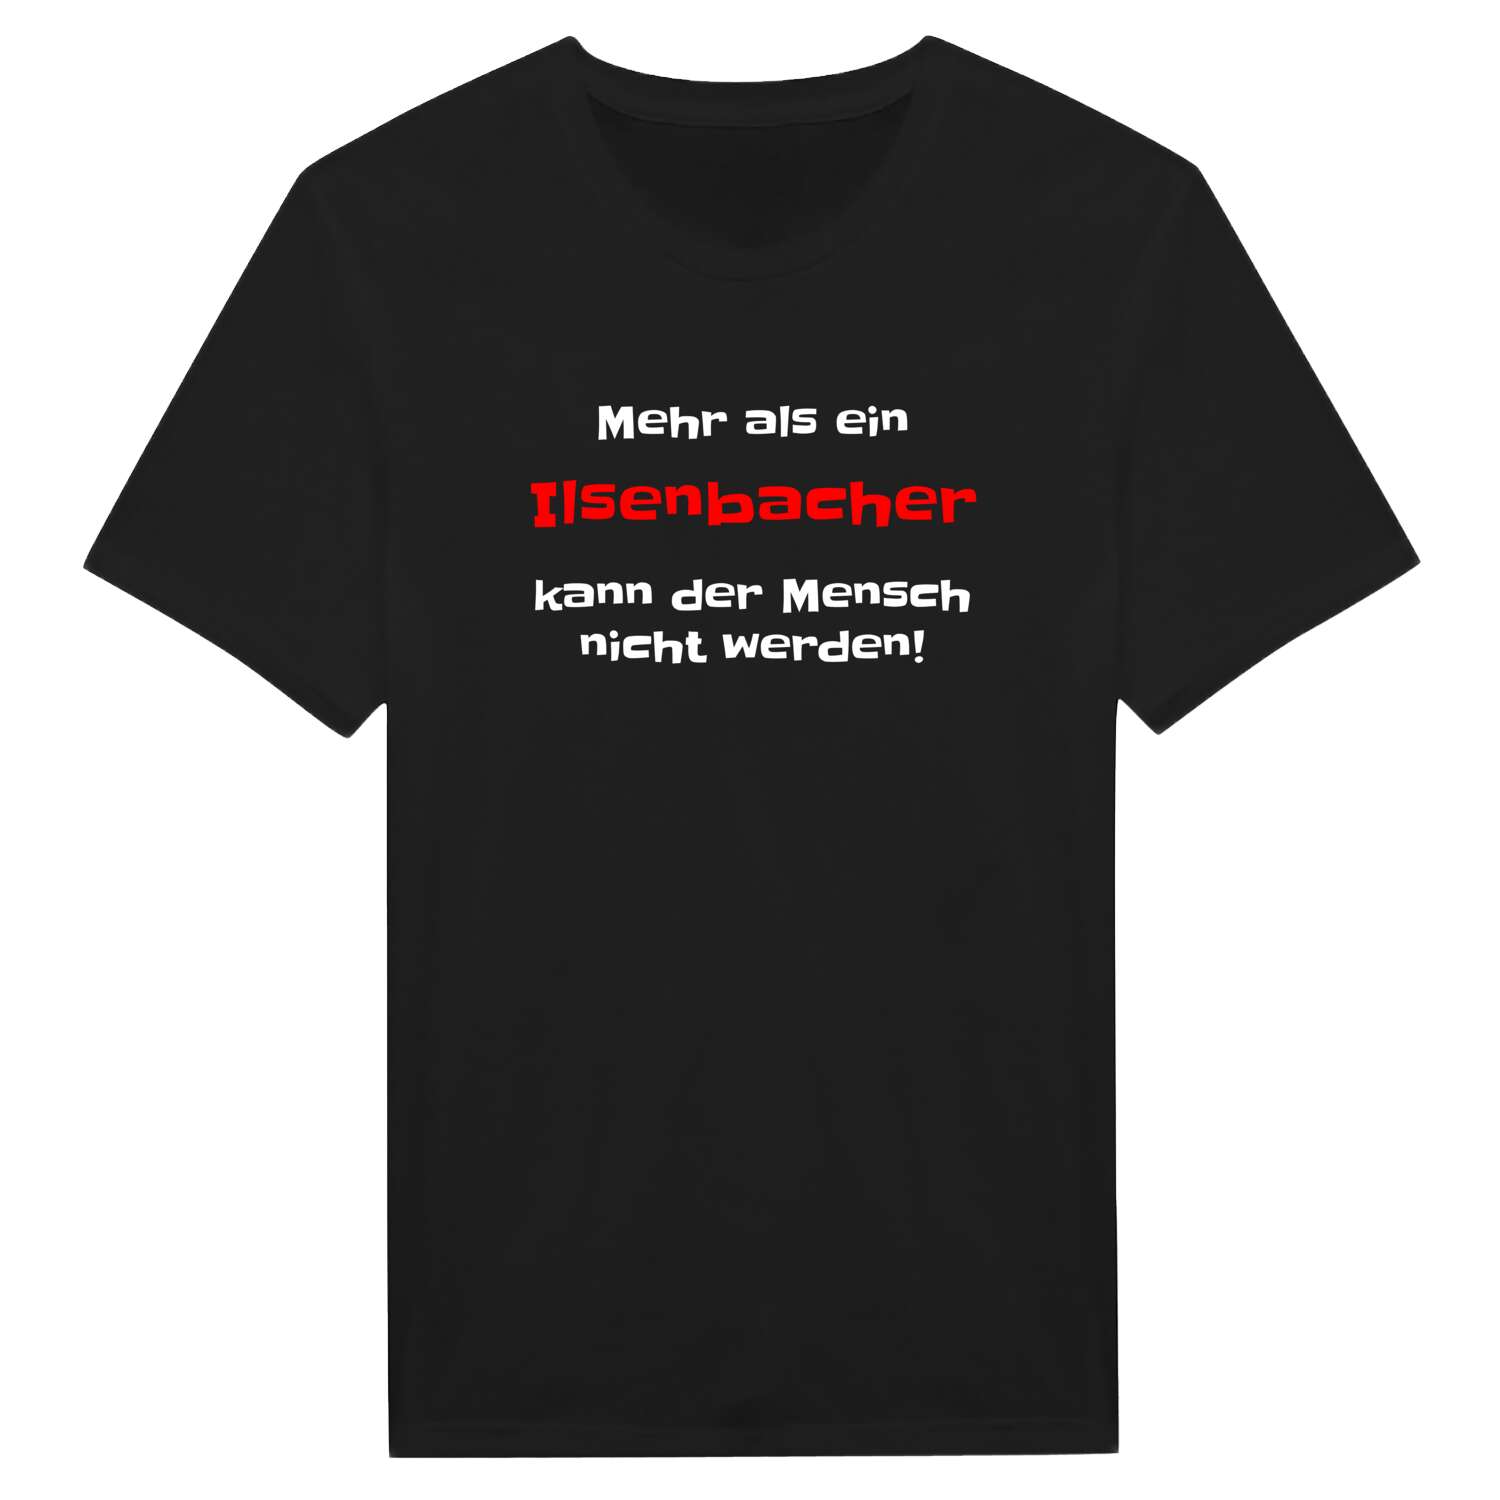 Ilsenbach T-Shirt »Mehr als ein«